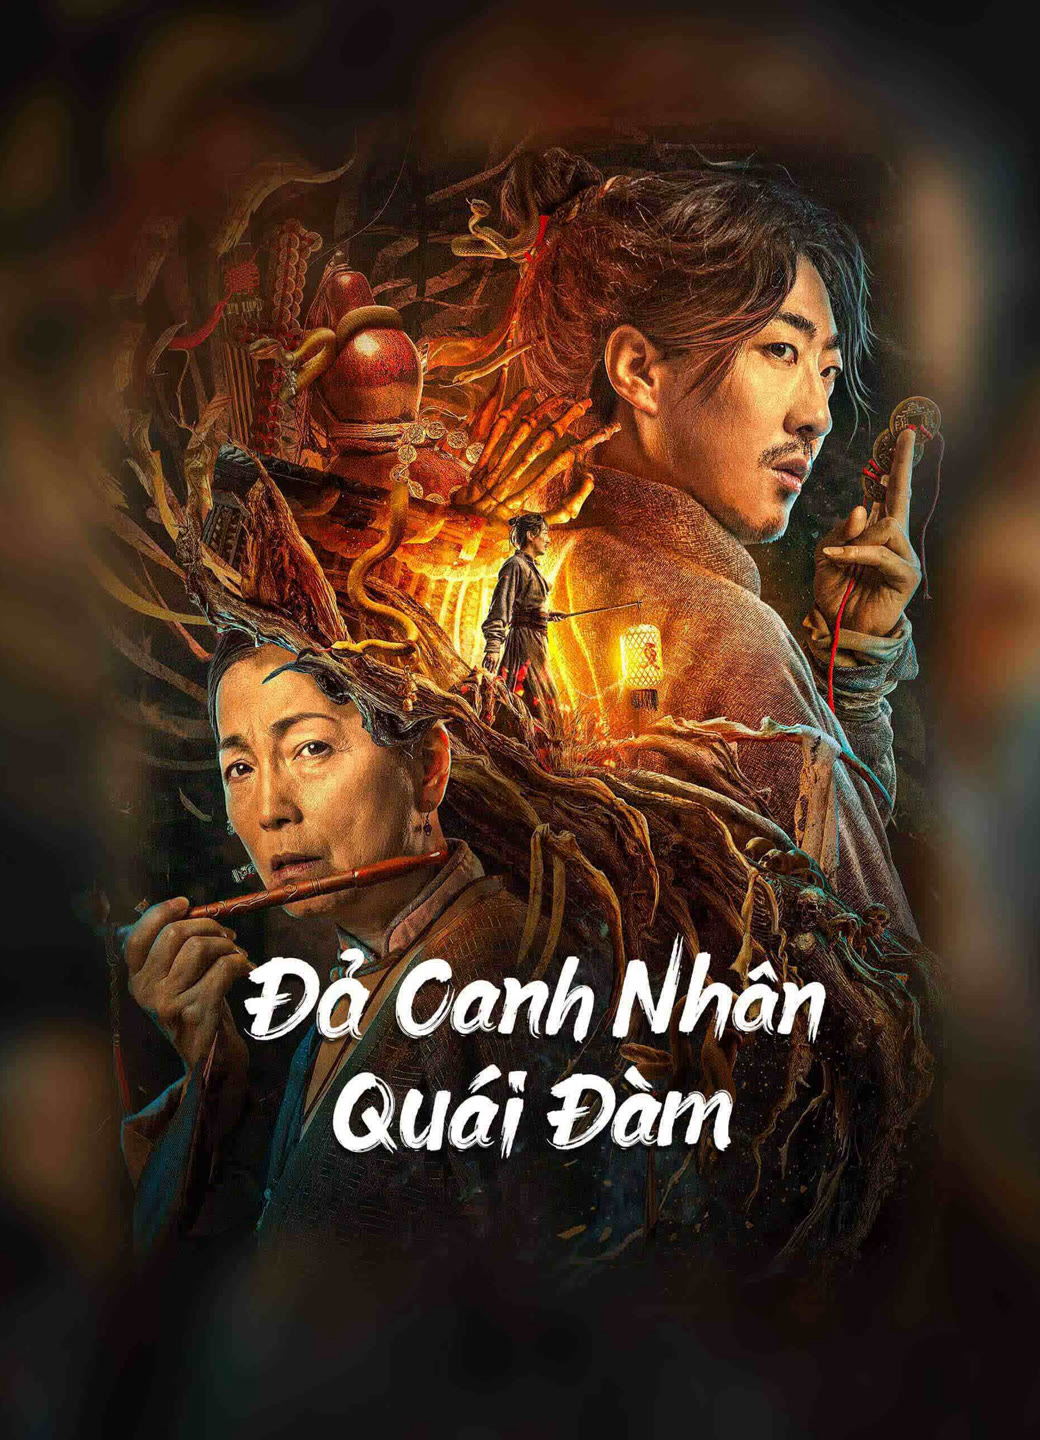 Poster Phim Đả Canh Nhân Quái Đàm (the story of the night watcher)